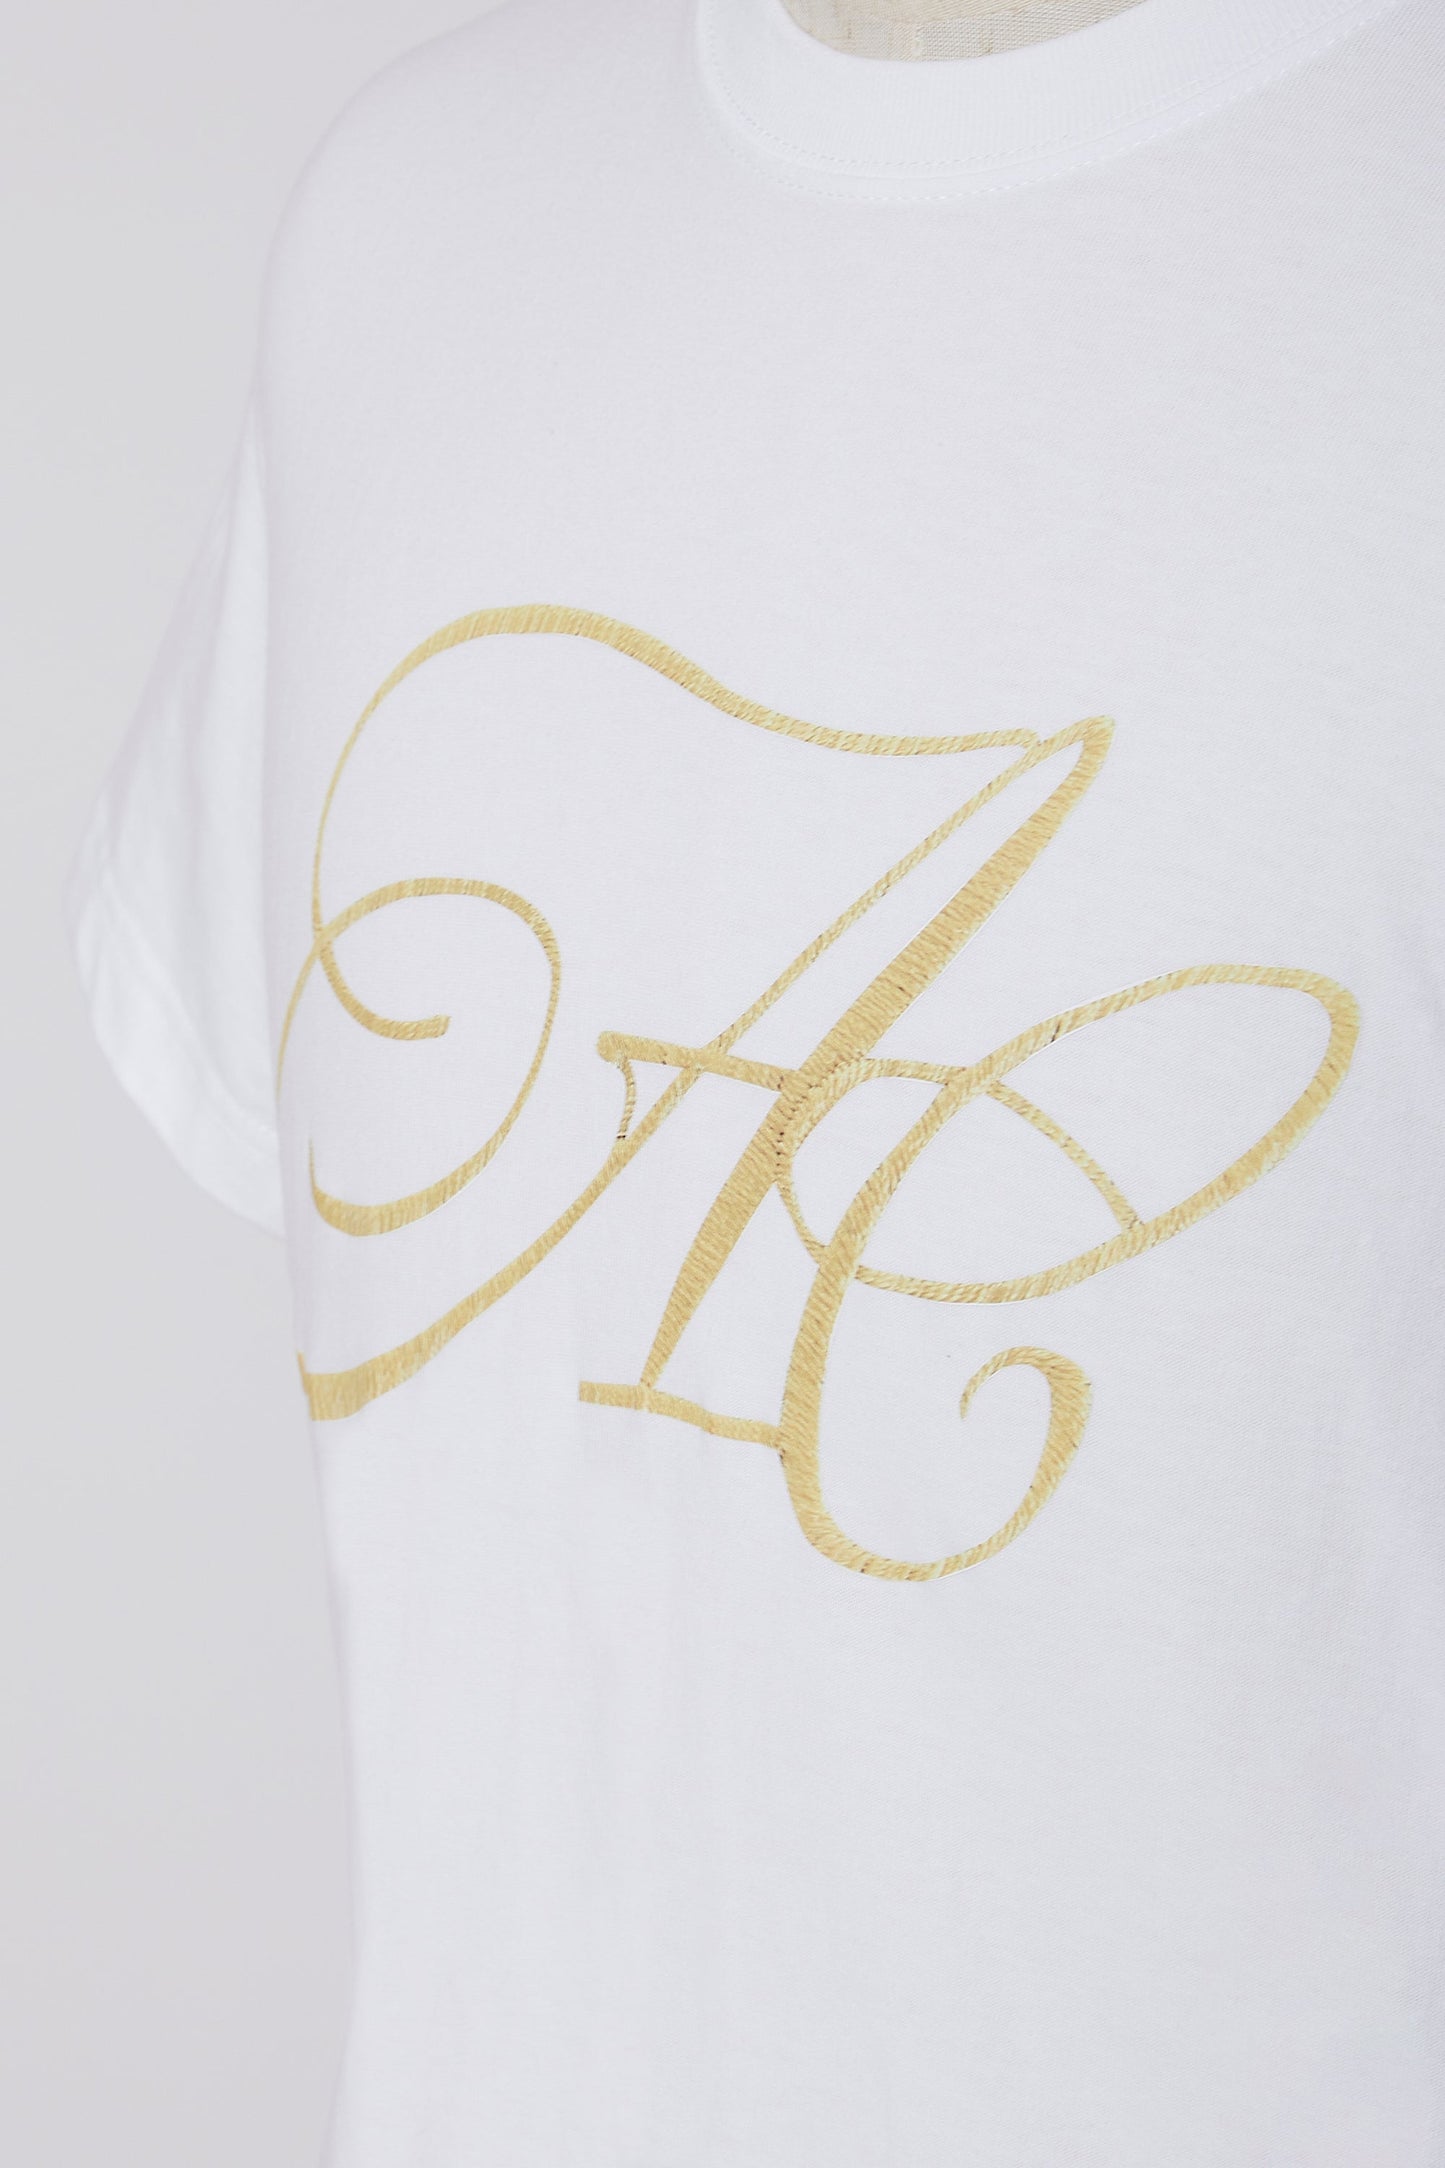 【予約】WatashiMade Original Goods [Arisa company] AC logo print T-shirt